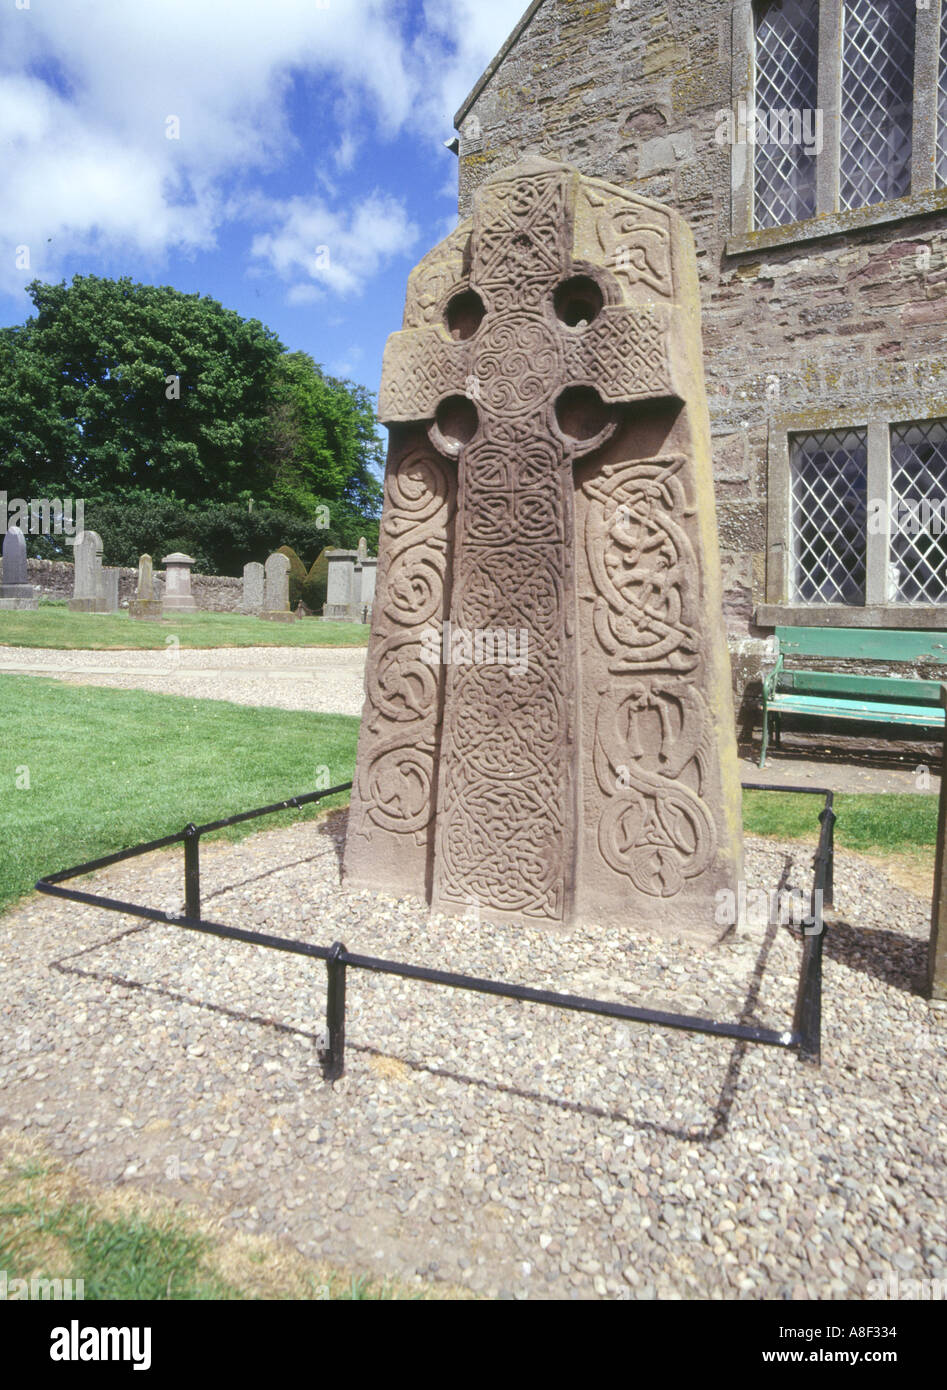 Dh croix Picte ANGUS ABERLEMNO dalle de pierre à sculpter dans la cour de l'église de pierres sculptées sculpture Ecosse celtique Banque D'Images